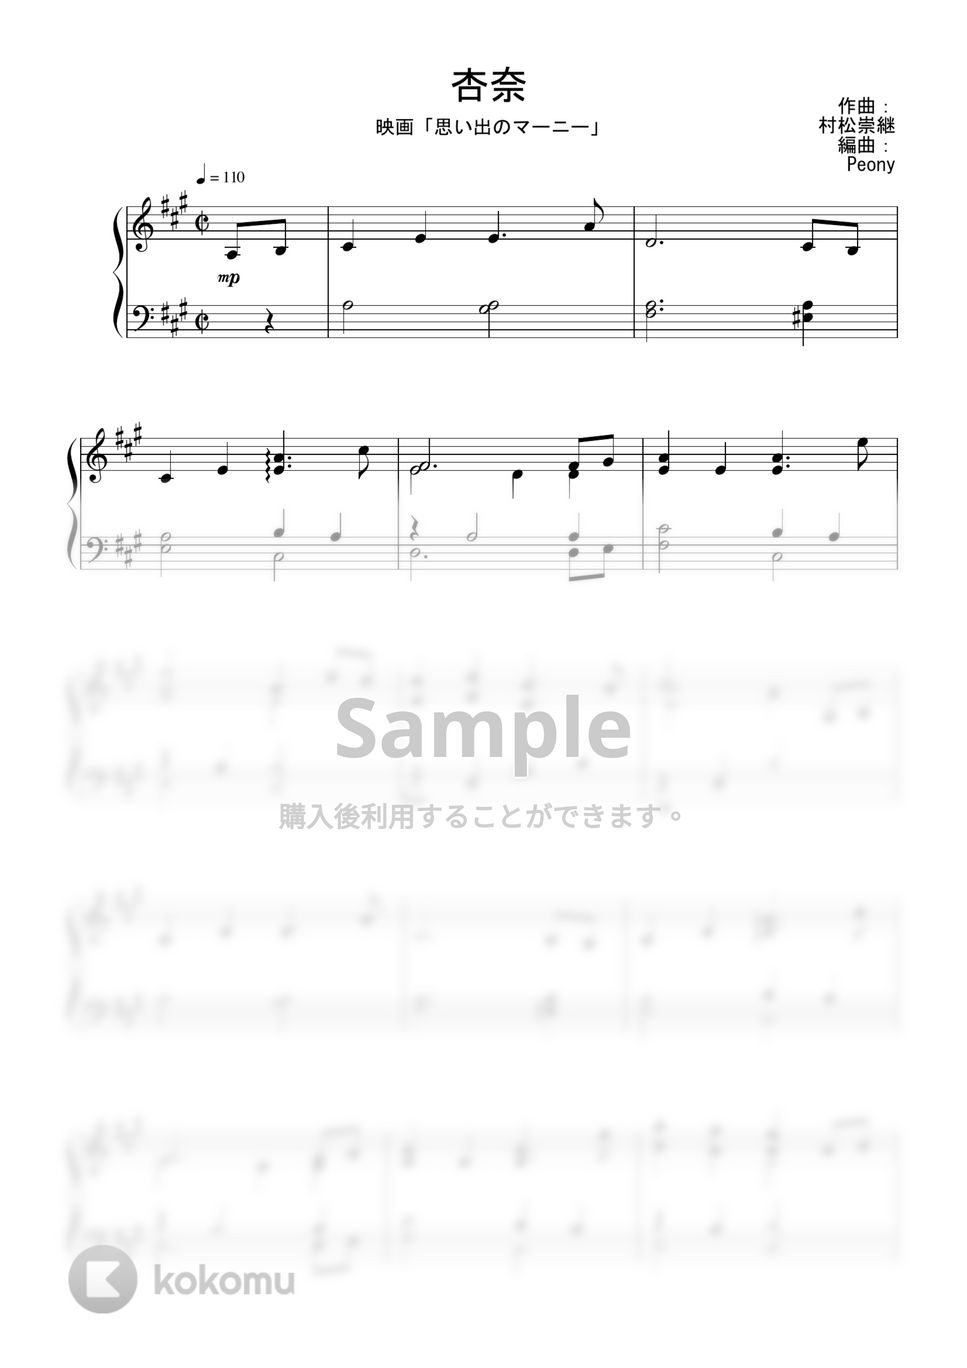 ジブリ映画『思い出のマーニー』OST - 杏奈 Piano Ver. (完コピ) by Peony